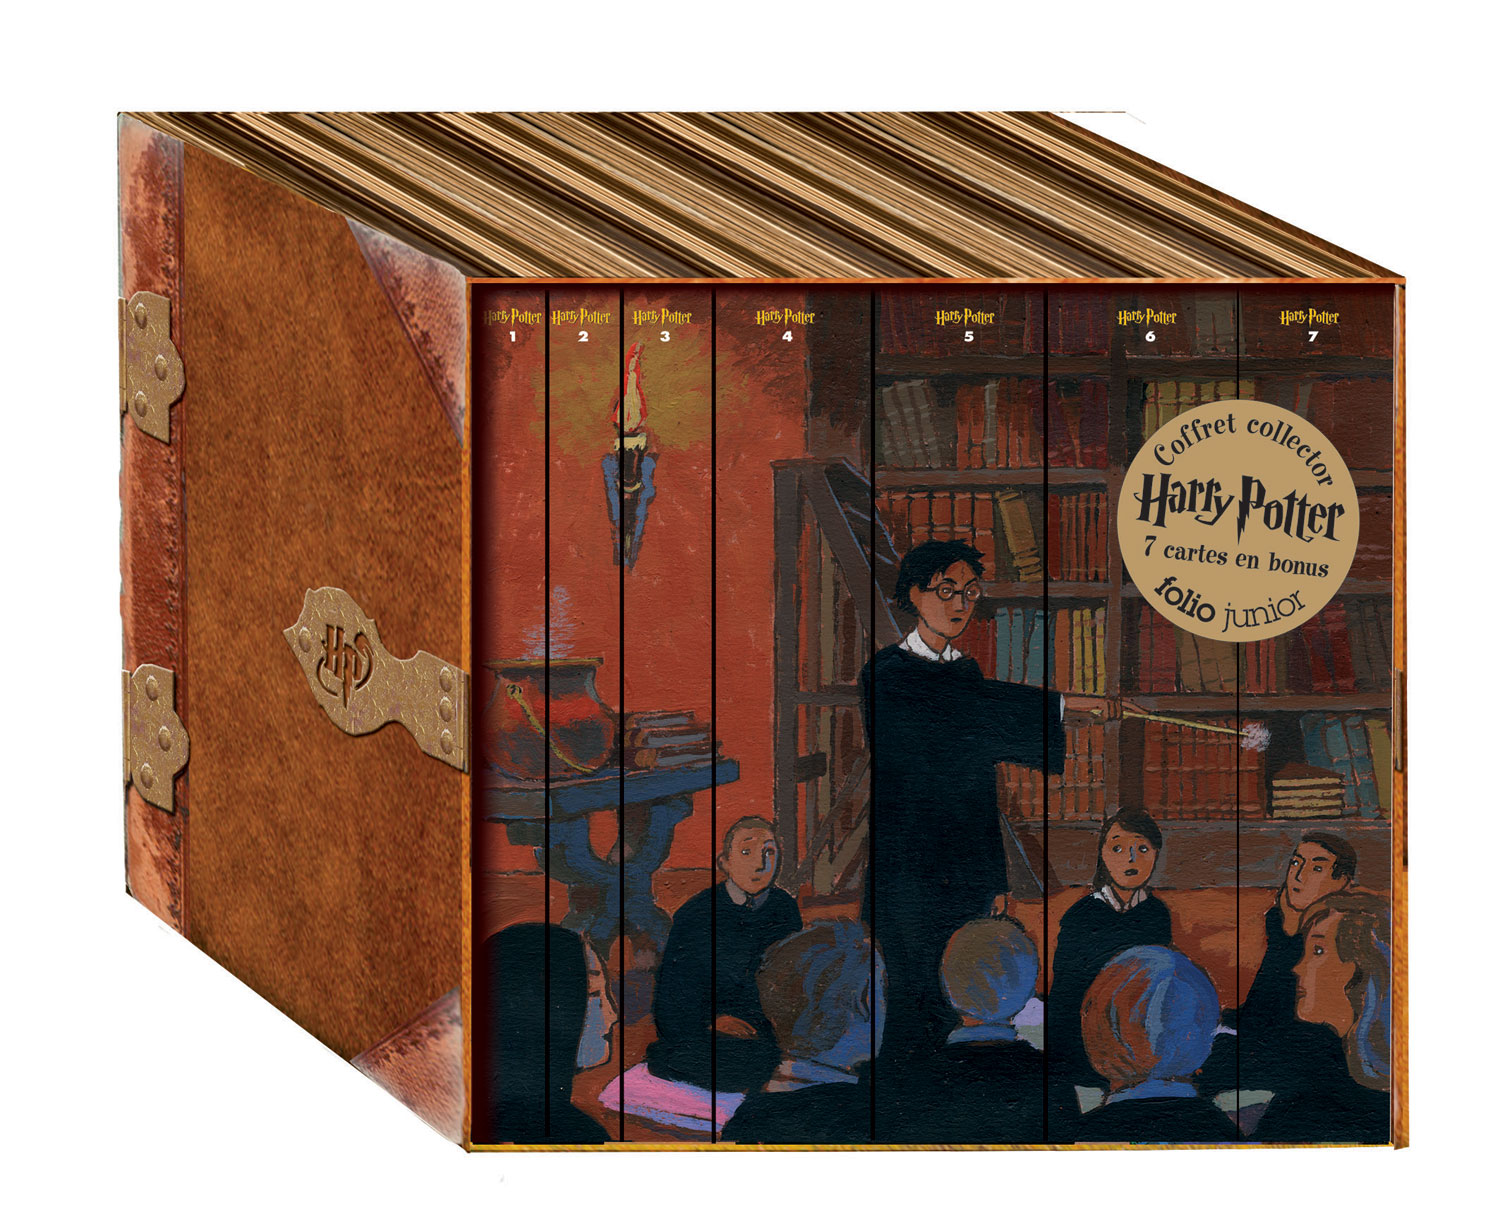 Contenu des éditions anniversaire de 'Harry Potter and the